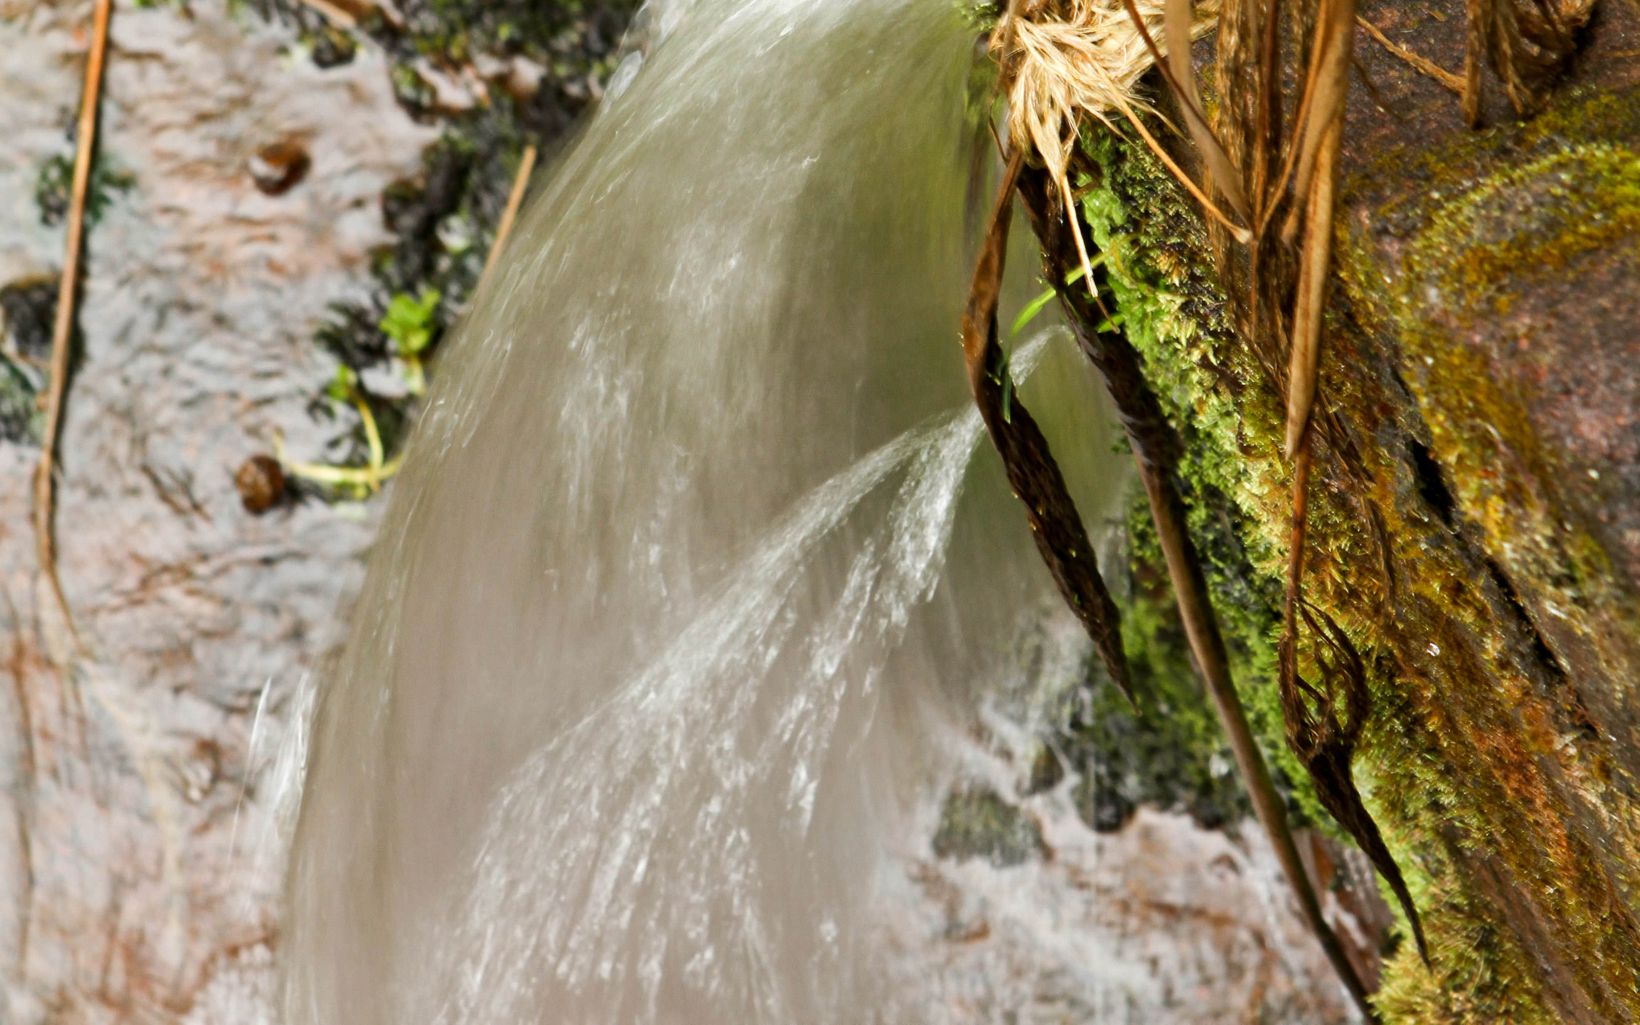  water sources in Ecuador